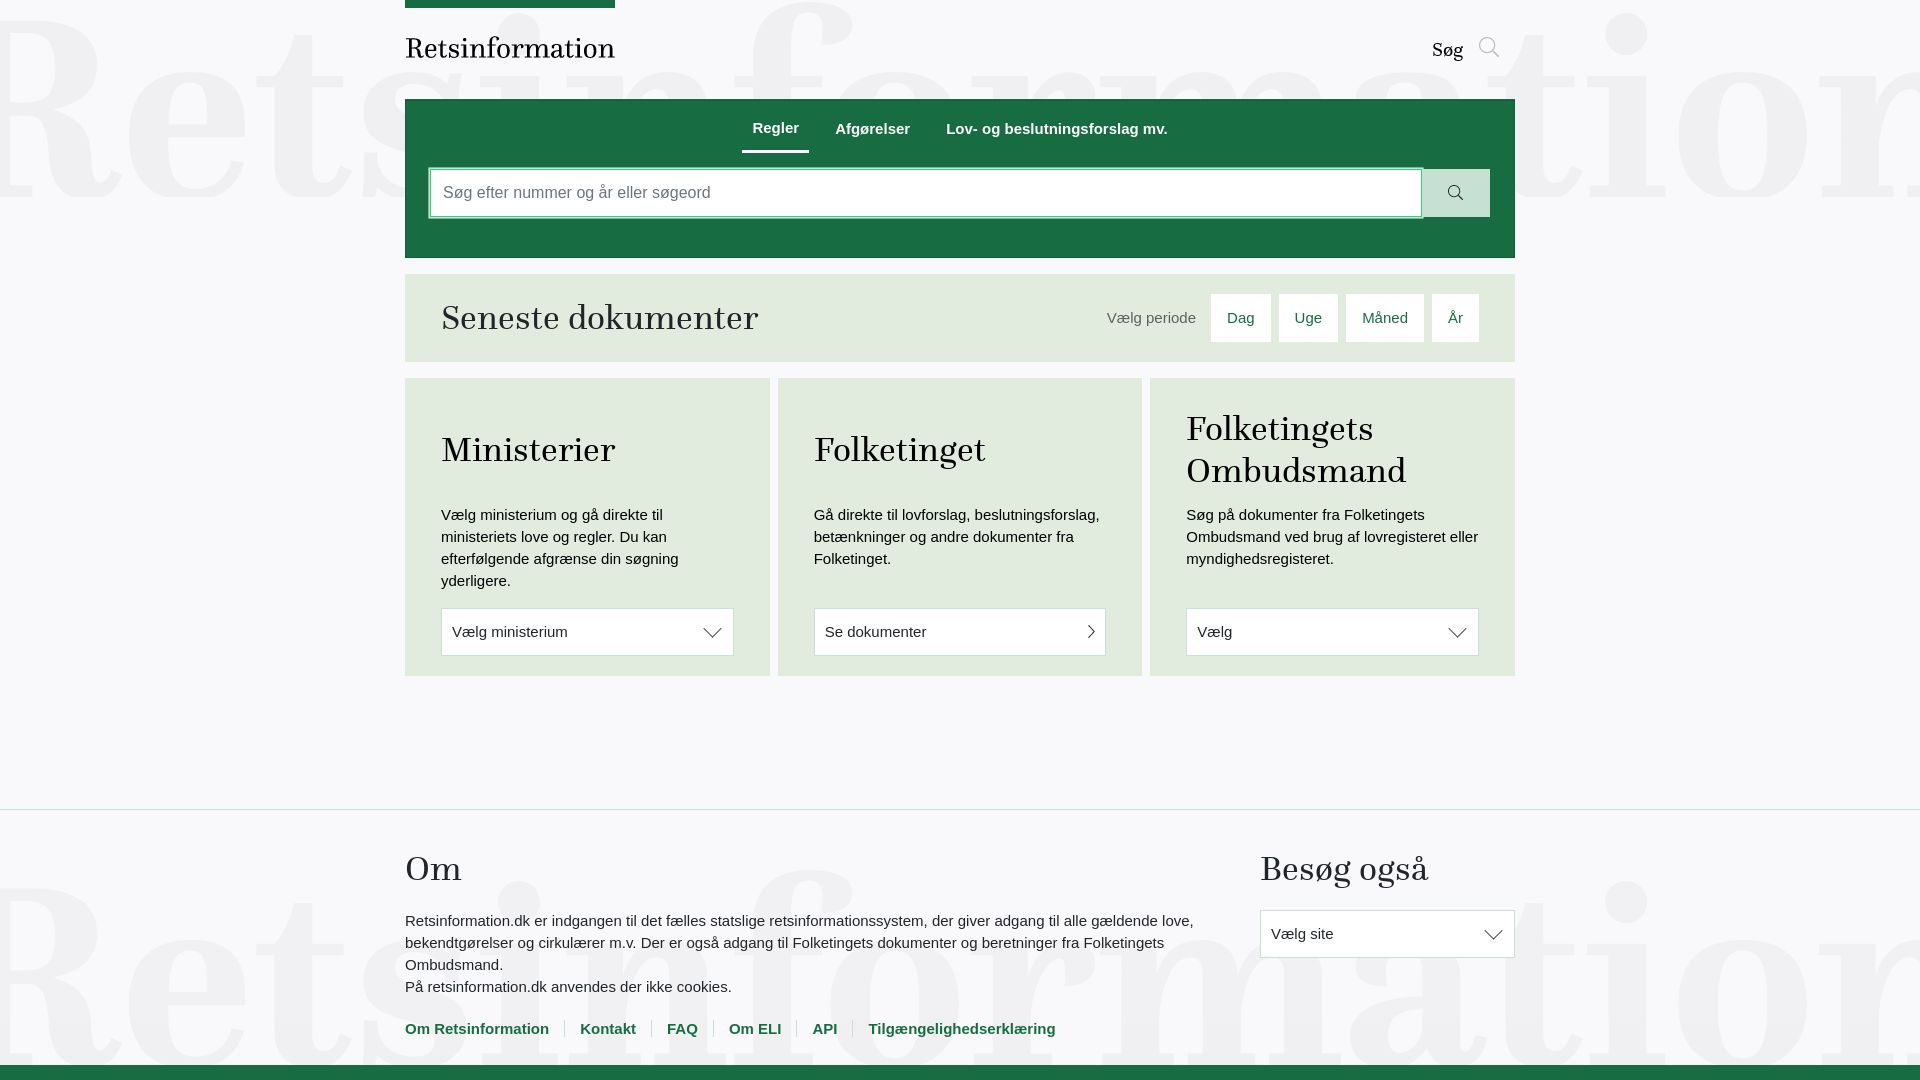 État du site web retsinformation.dk est   EN LIGNE